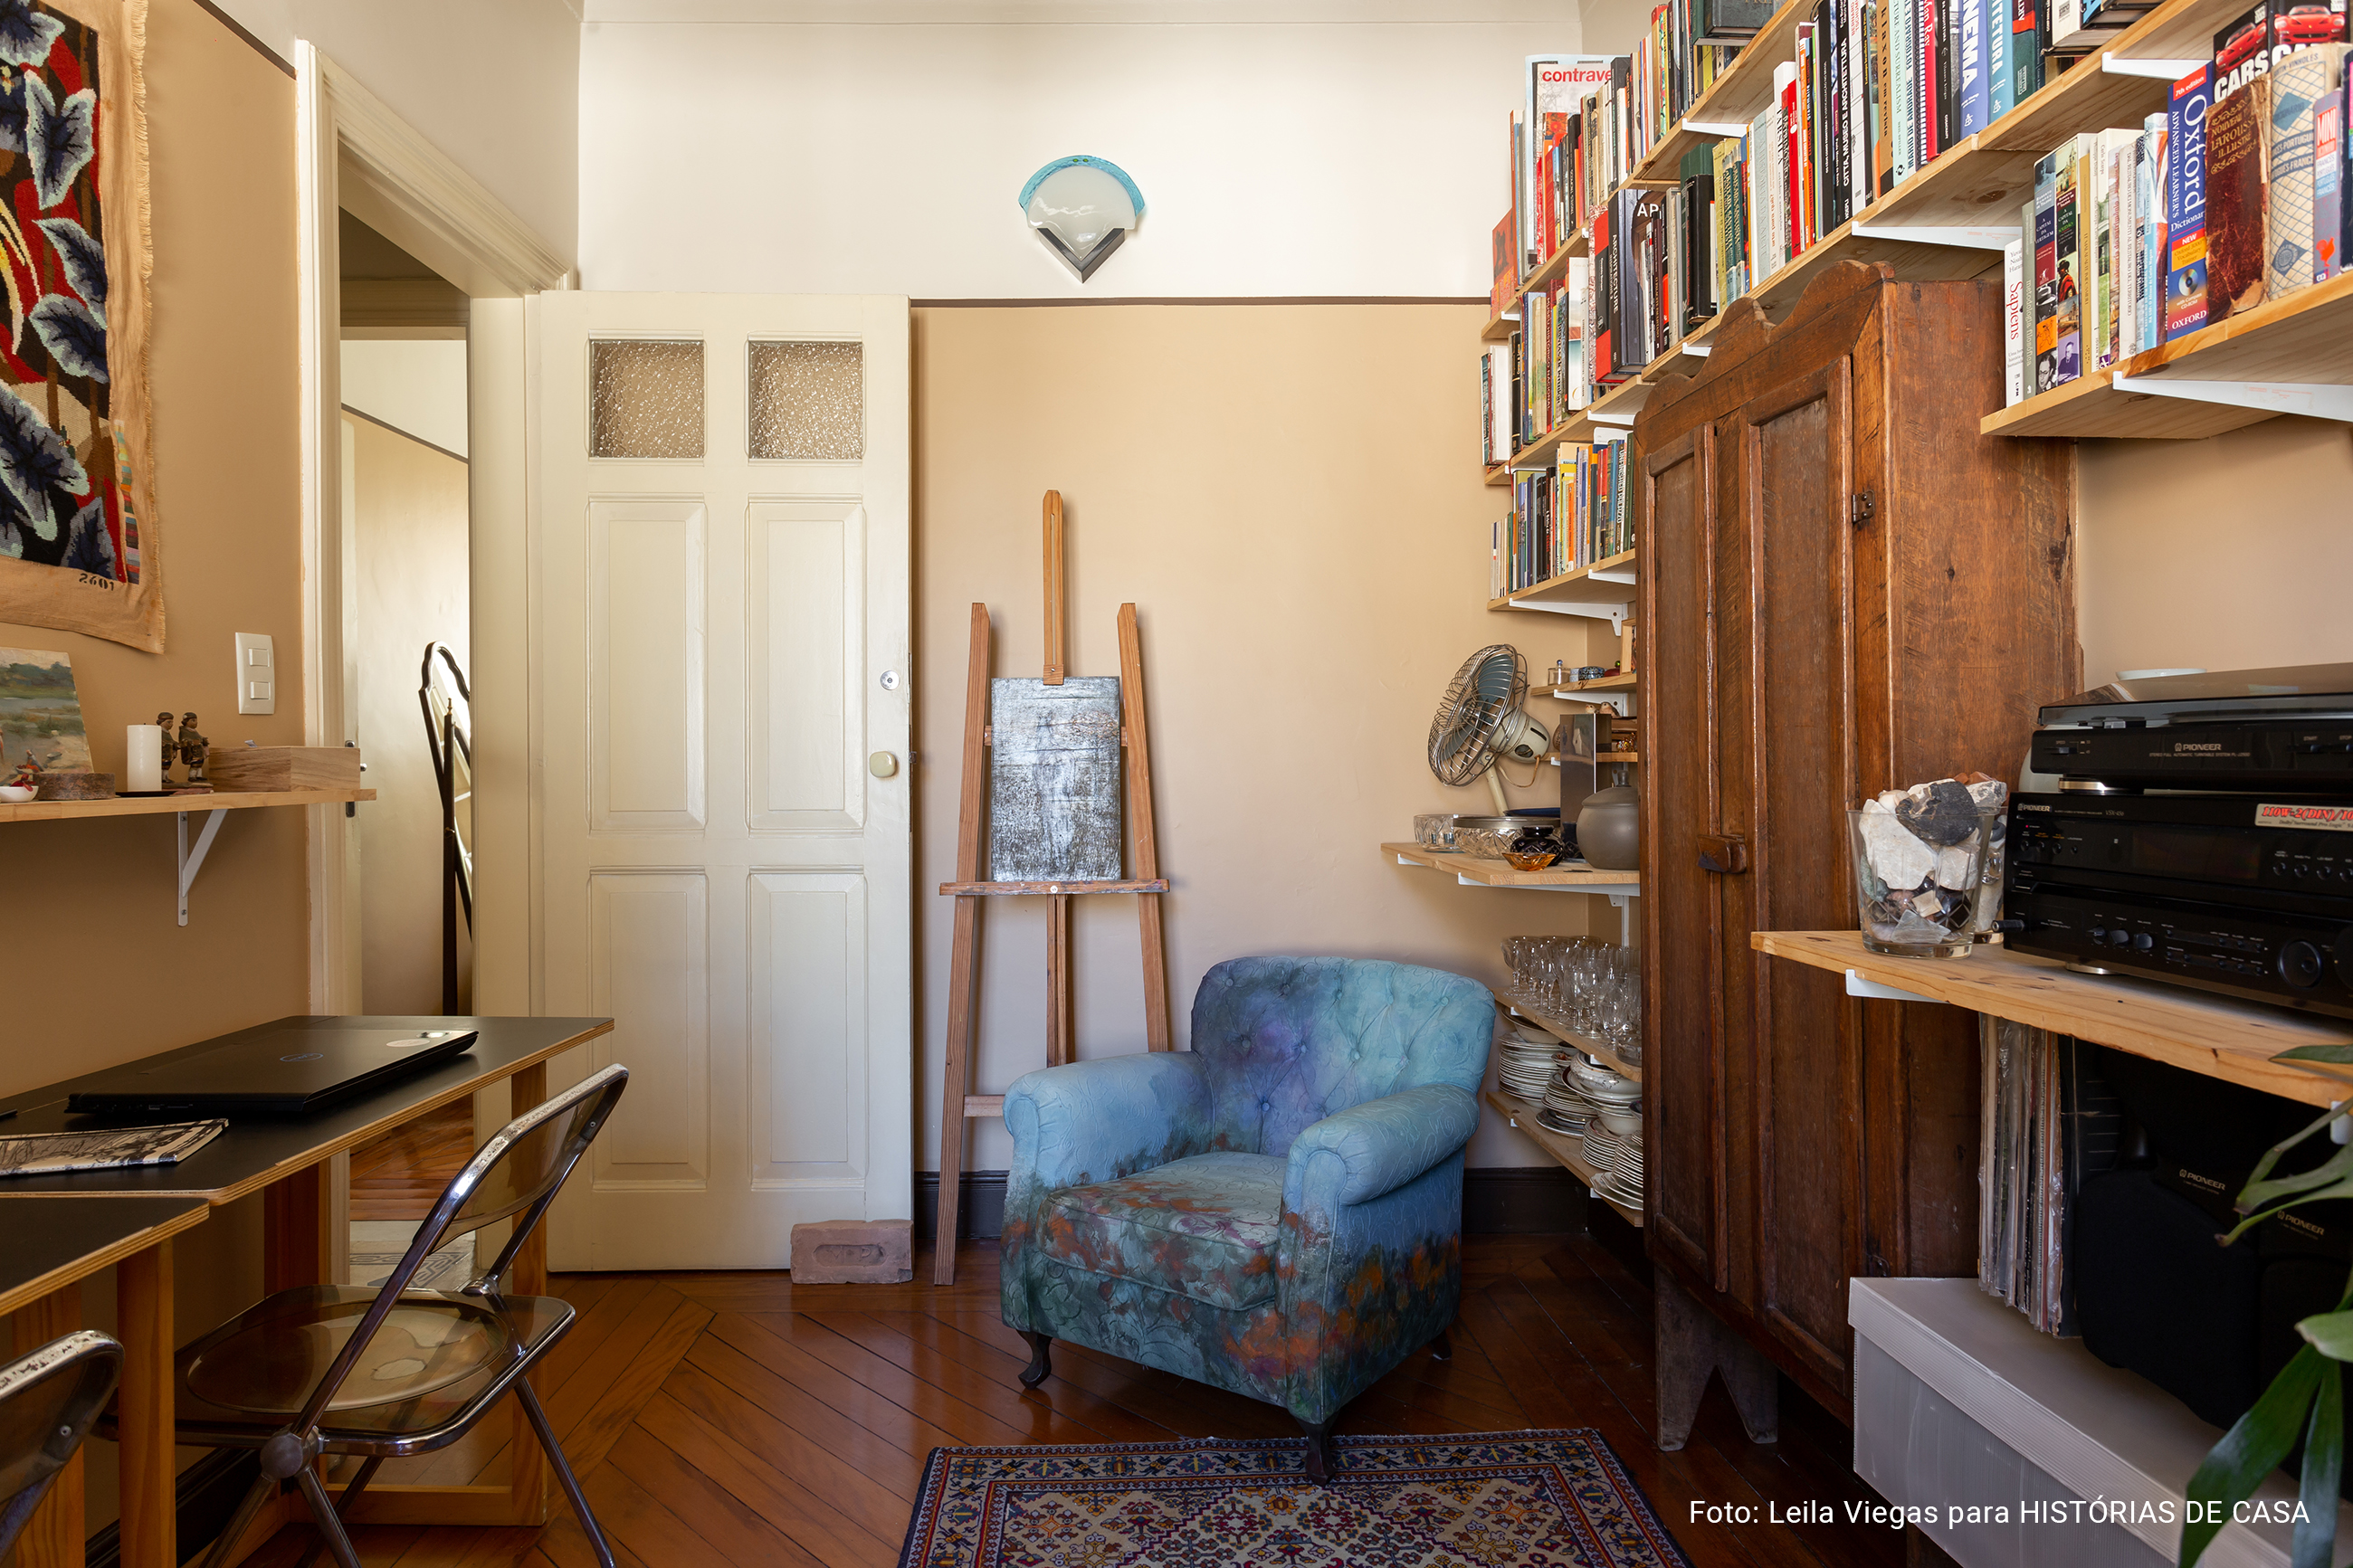 Antes e depois: reforma em apartamento antigo com decoração vintage.